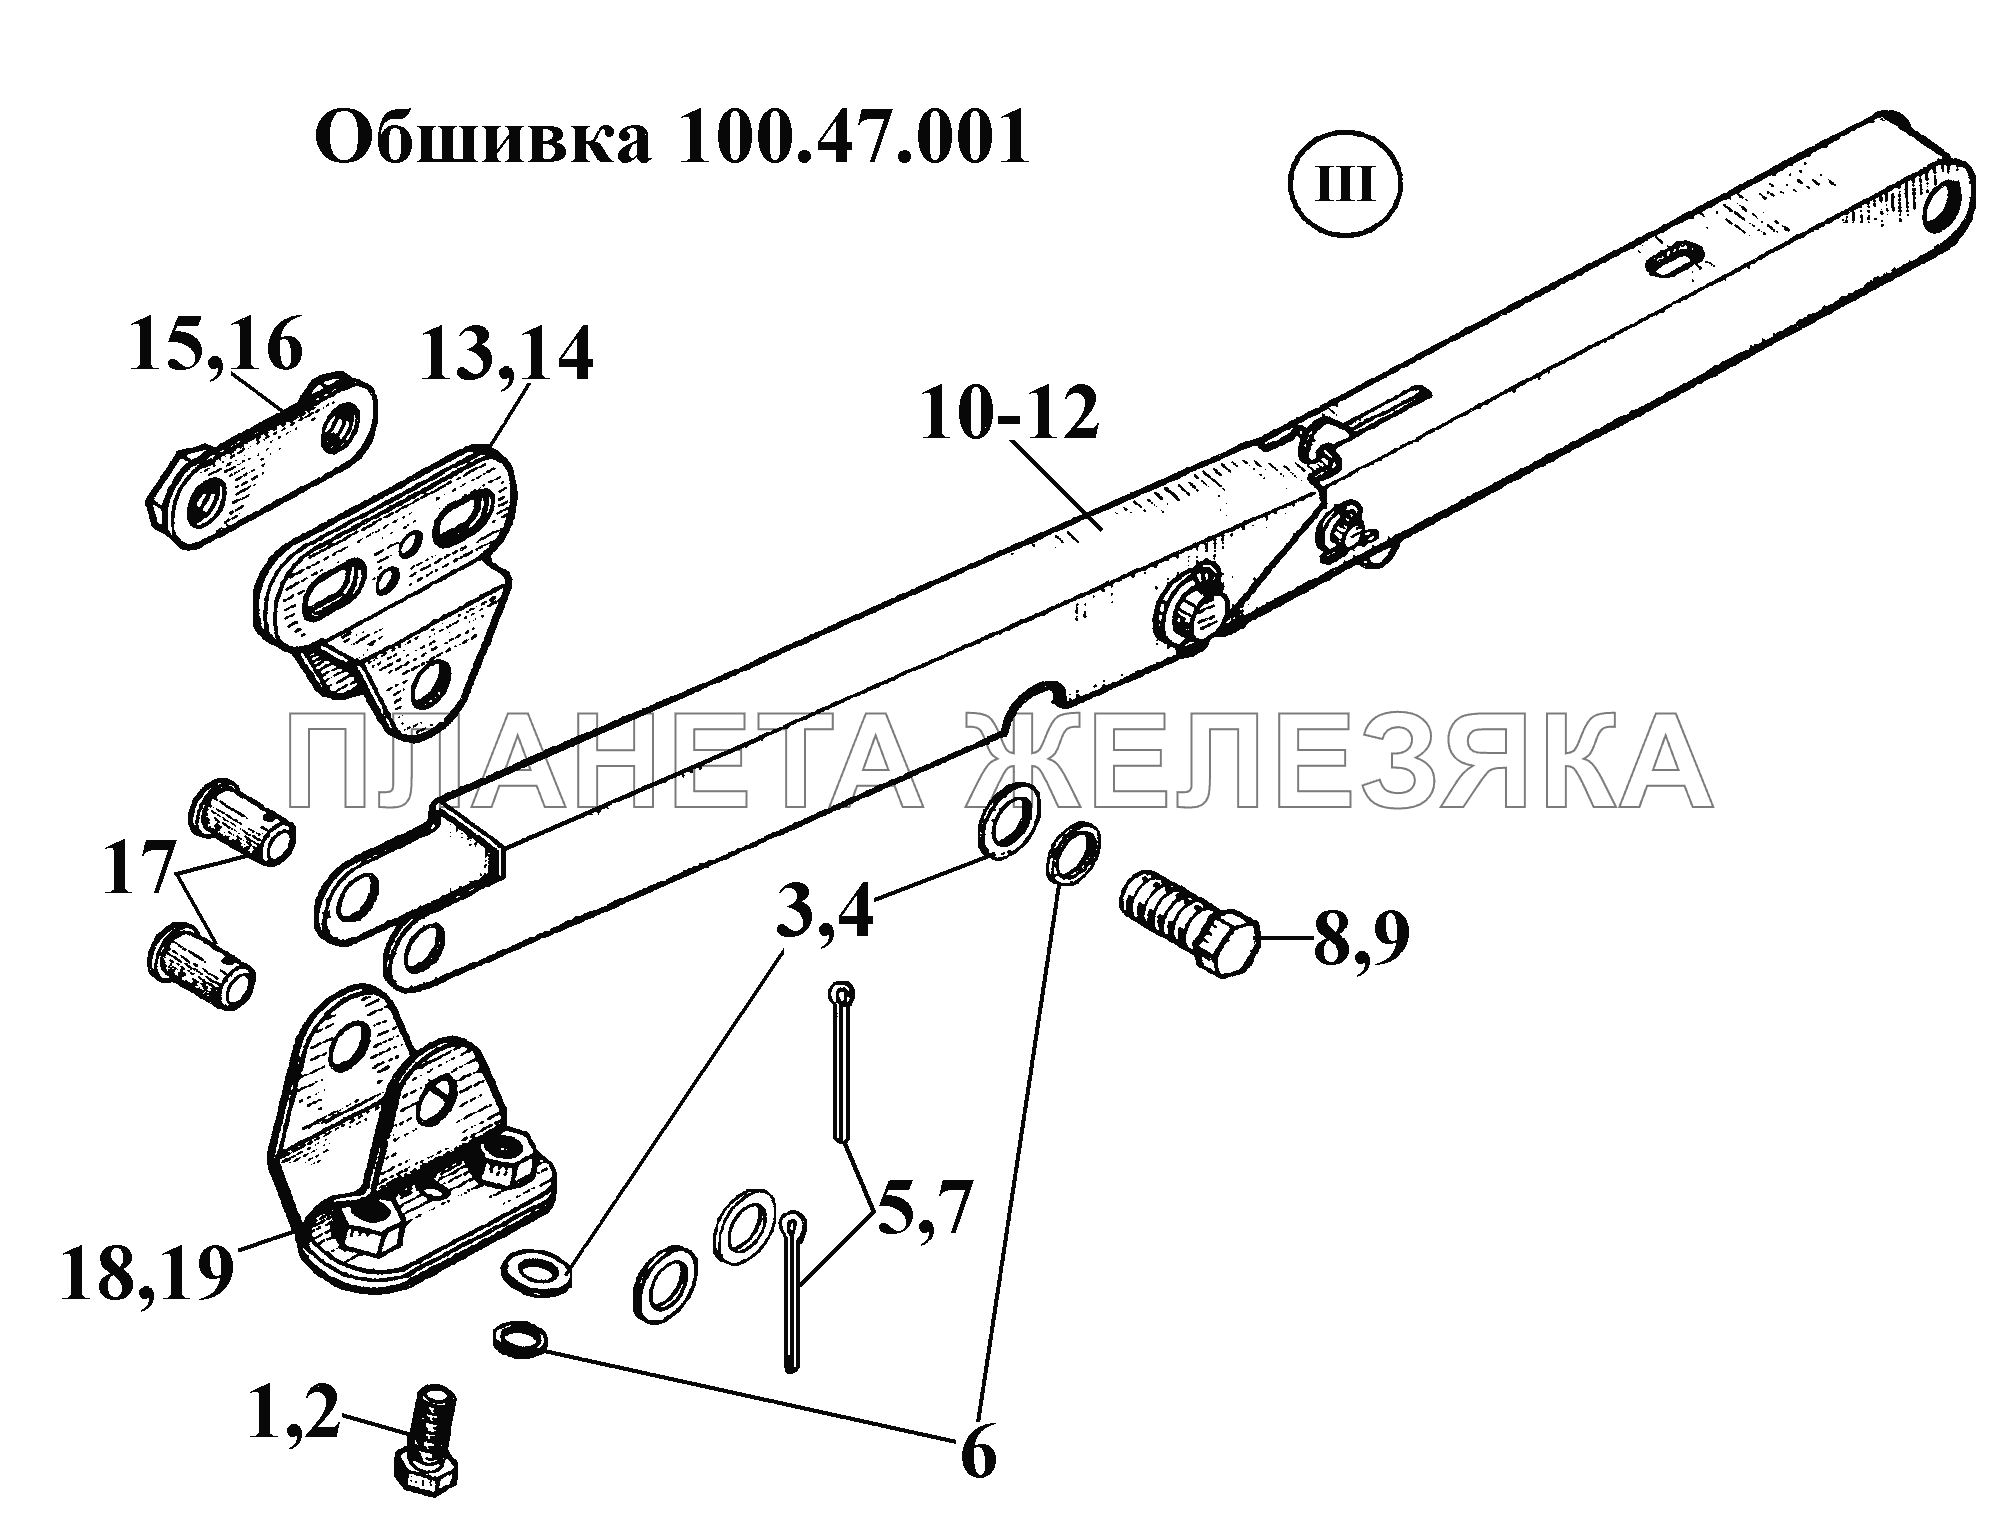 Обшивка 100.47.001 (4) ВТ-100Д